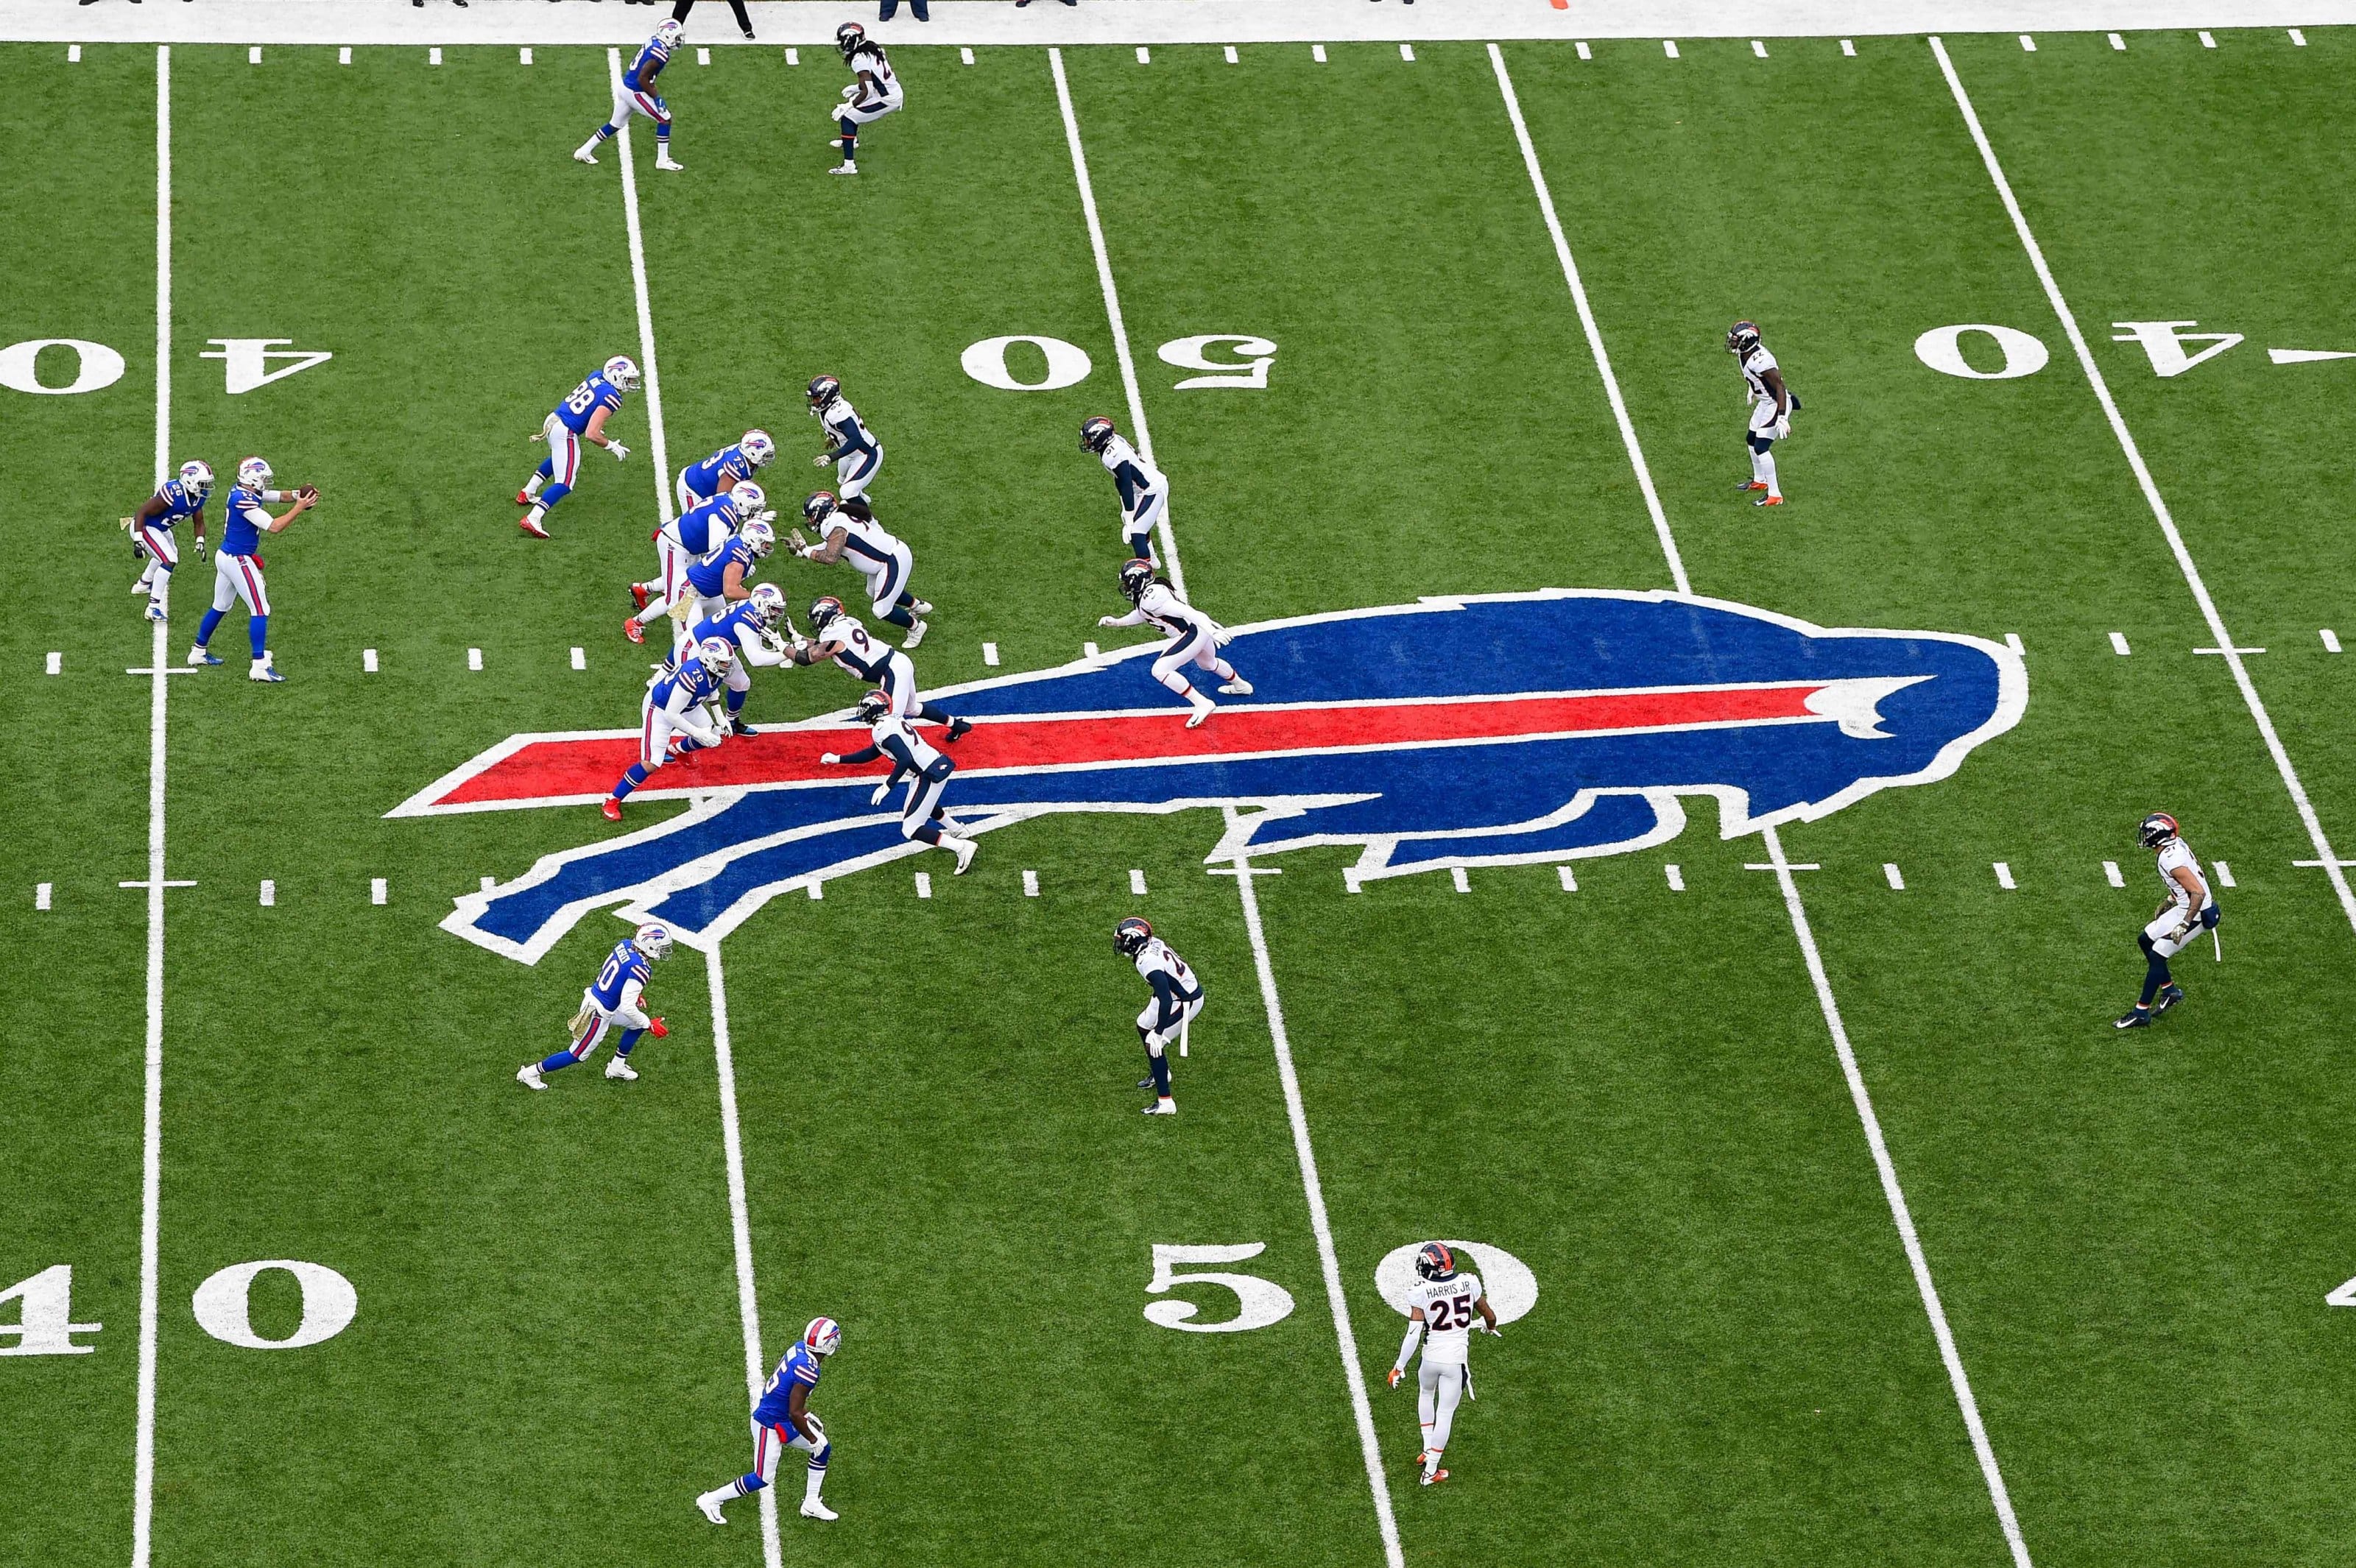 Brobrygge Igangværende hjælp Buffalo Bills: 4 bold predictions for the 2021 season based on schedule